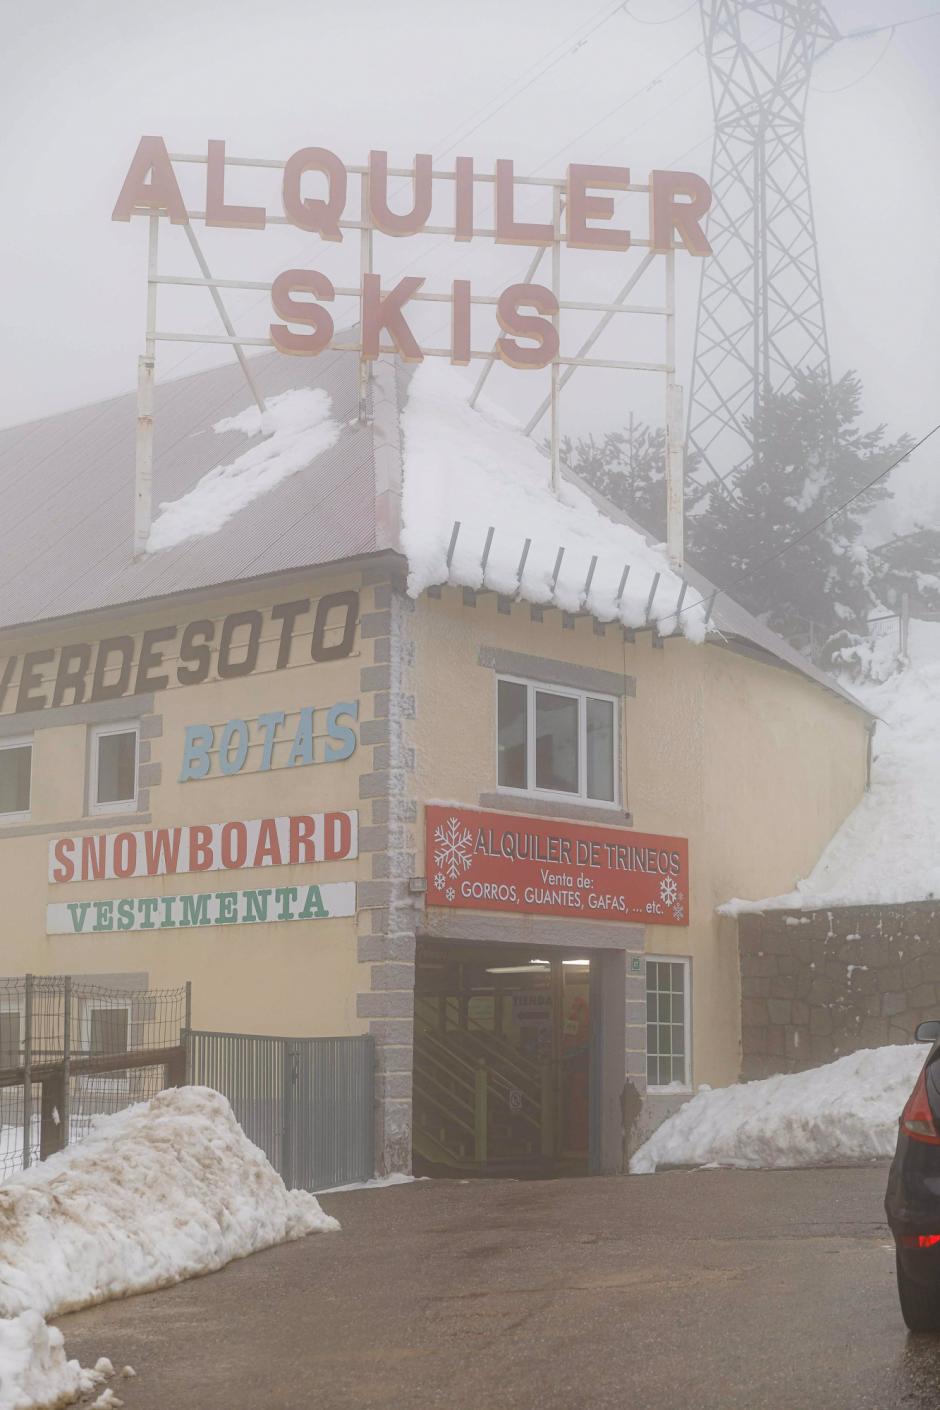 Un local de alquiler de esquís, en el Puerto de Navacerrada, a 1 de diciembre de 2021